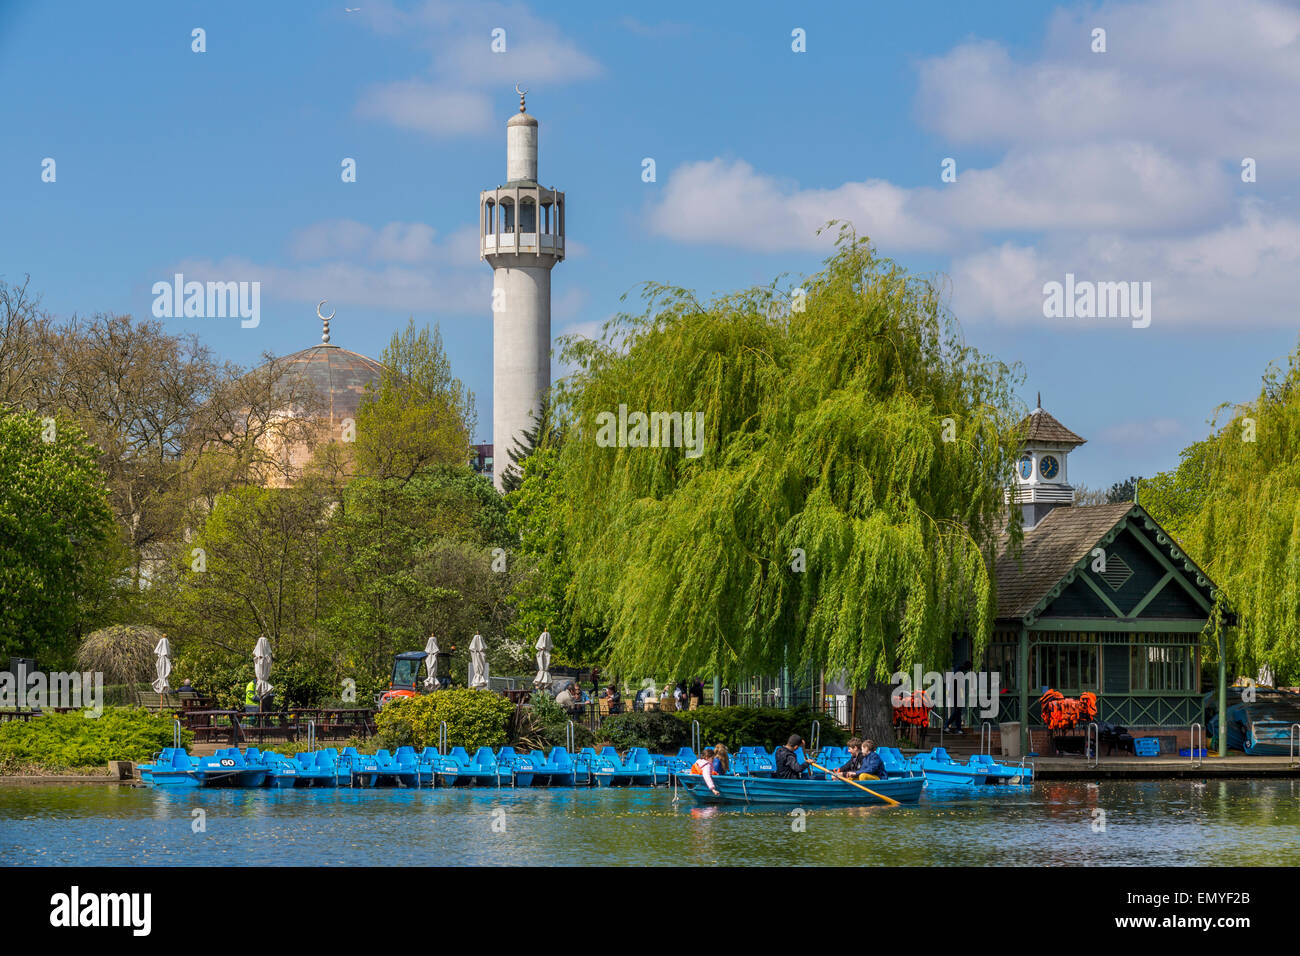 Le Regents Park lac de plaisance et de la mosquée centrale de Londres, Londres, Angleterre, Royaume-Uni Banque D'Images